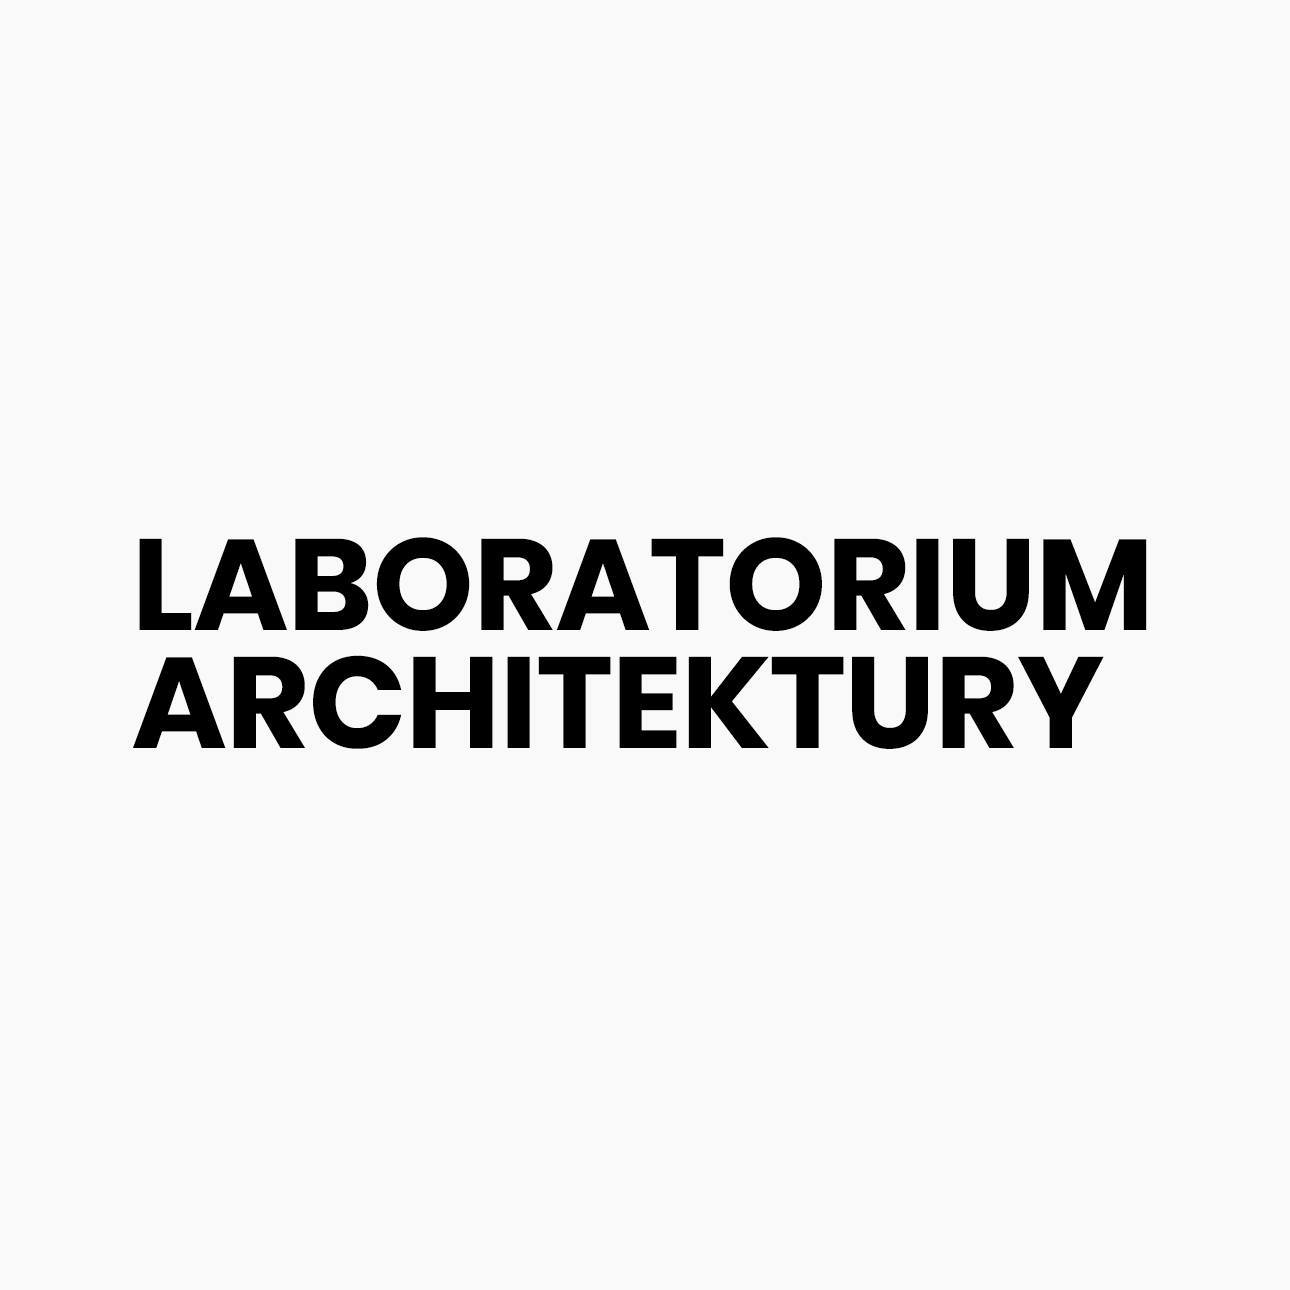 Laboratorium Architektury